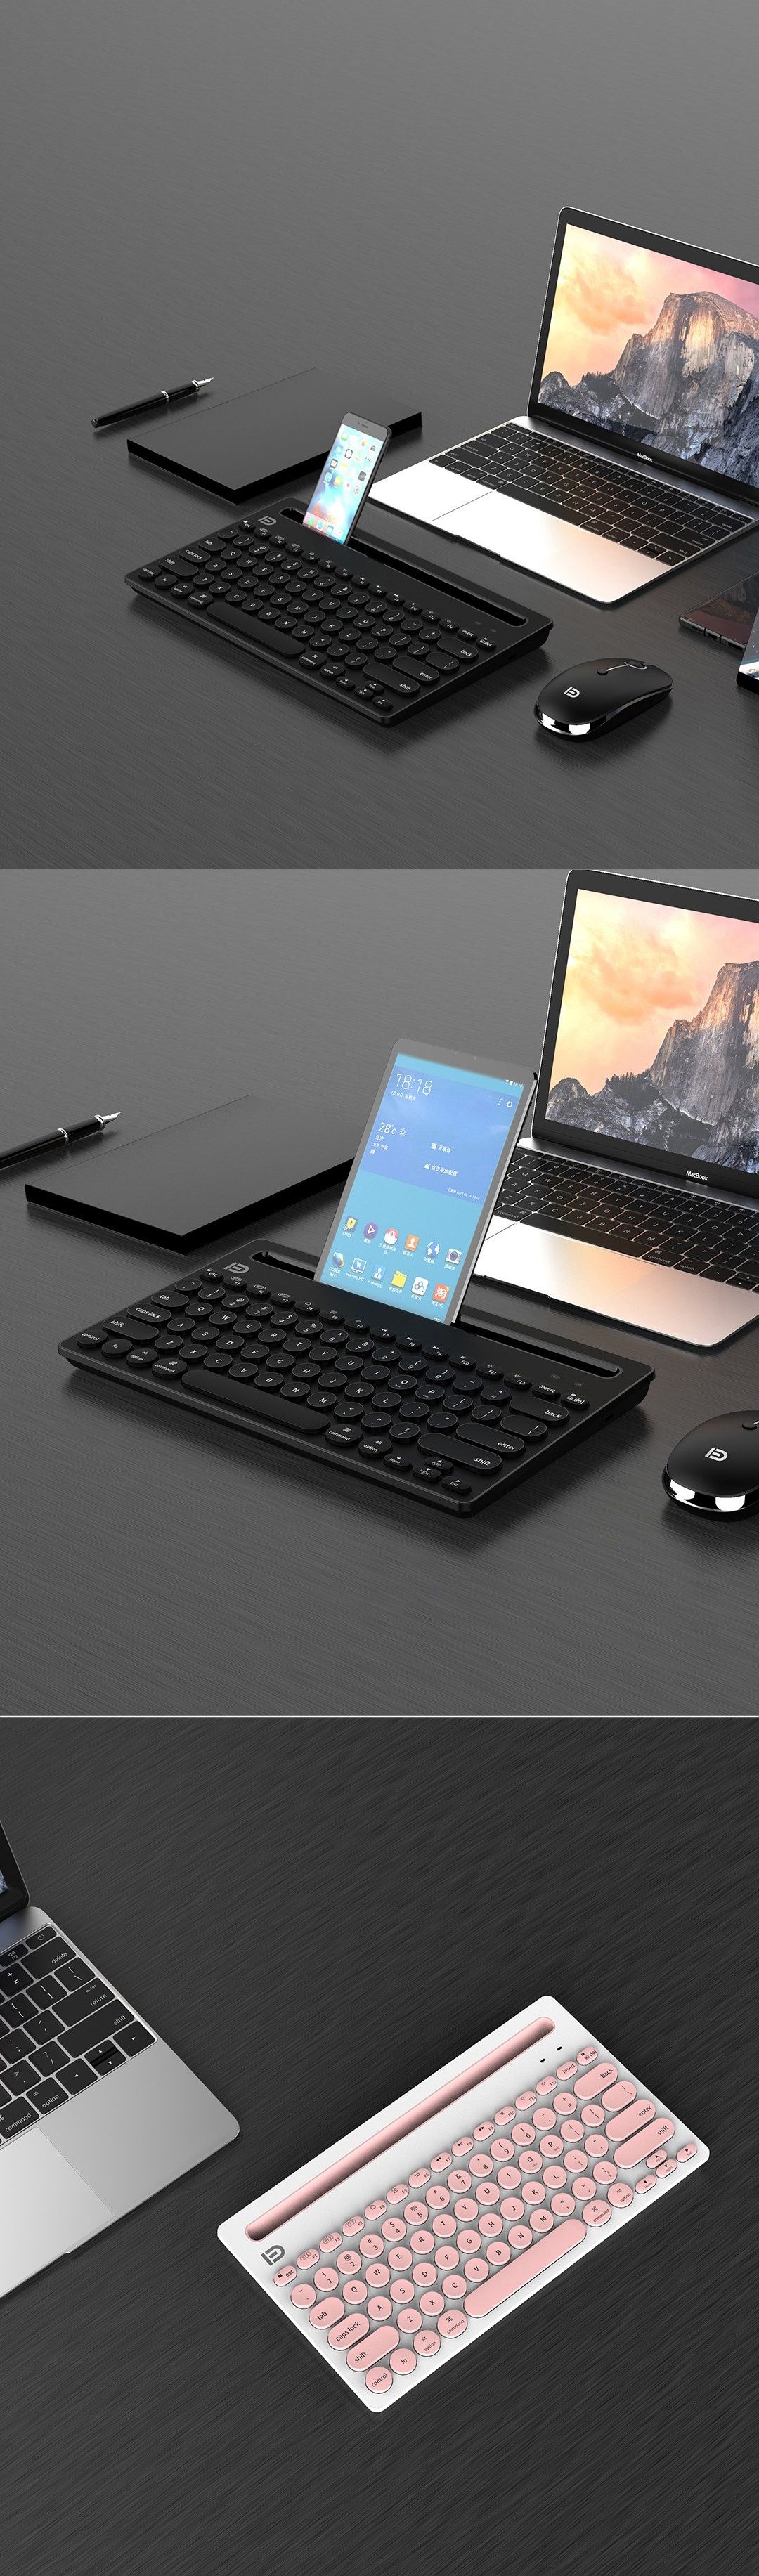 FD-IK3381-Wireless-bluetooth-Keyboard-78-Keys-Multi-devices-Connection-Office-Keyboard-iPads-Tablet--1624586